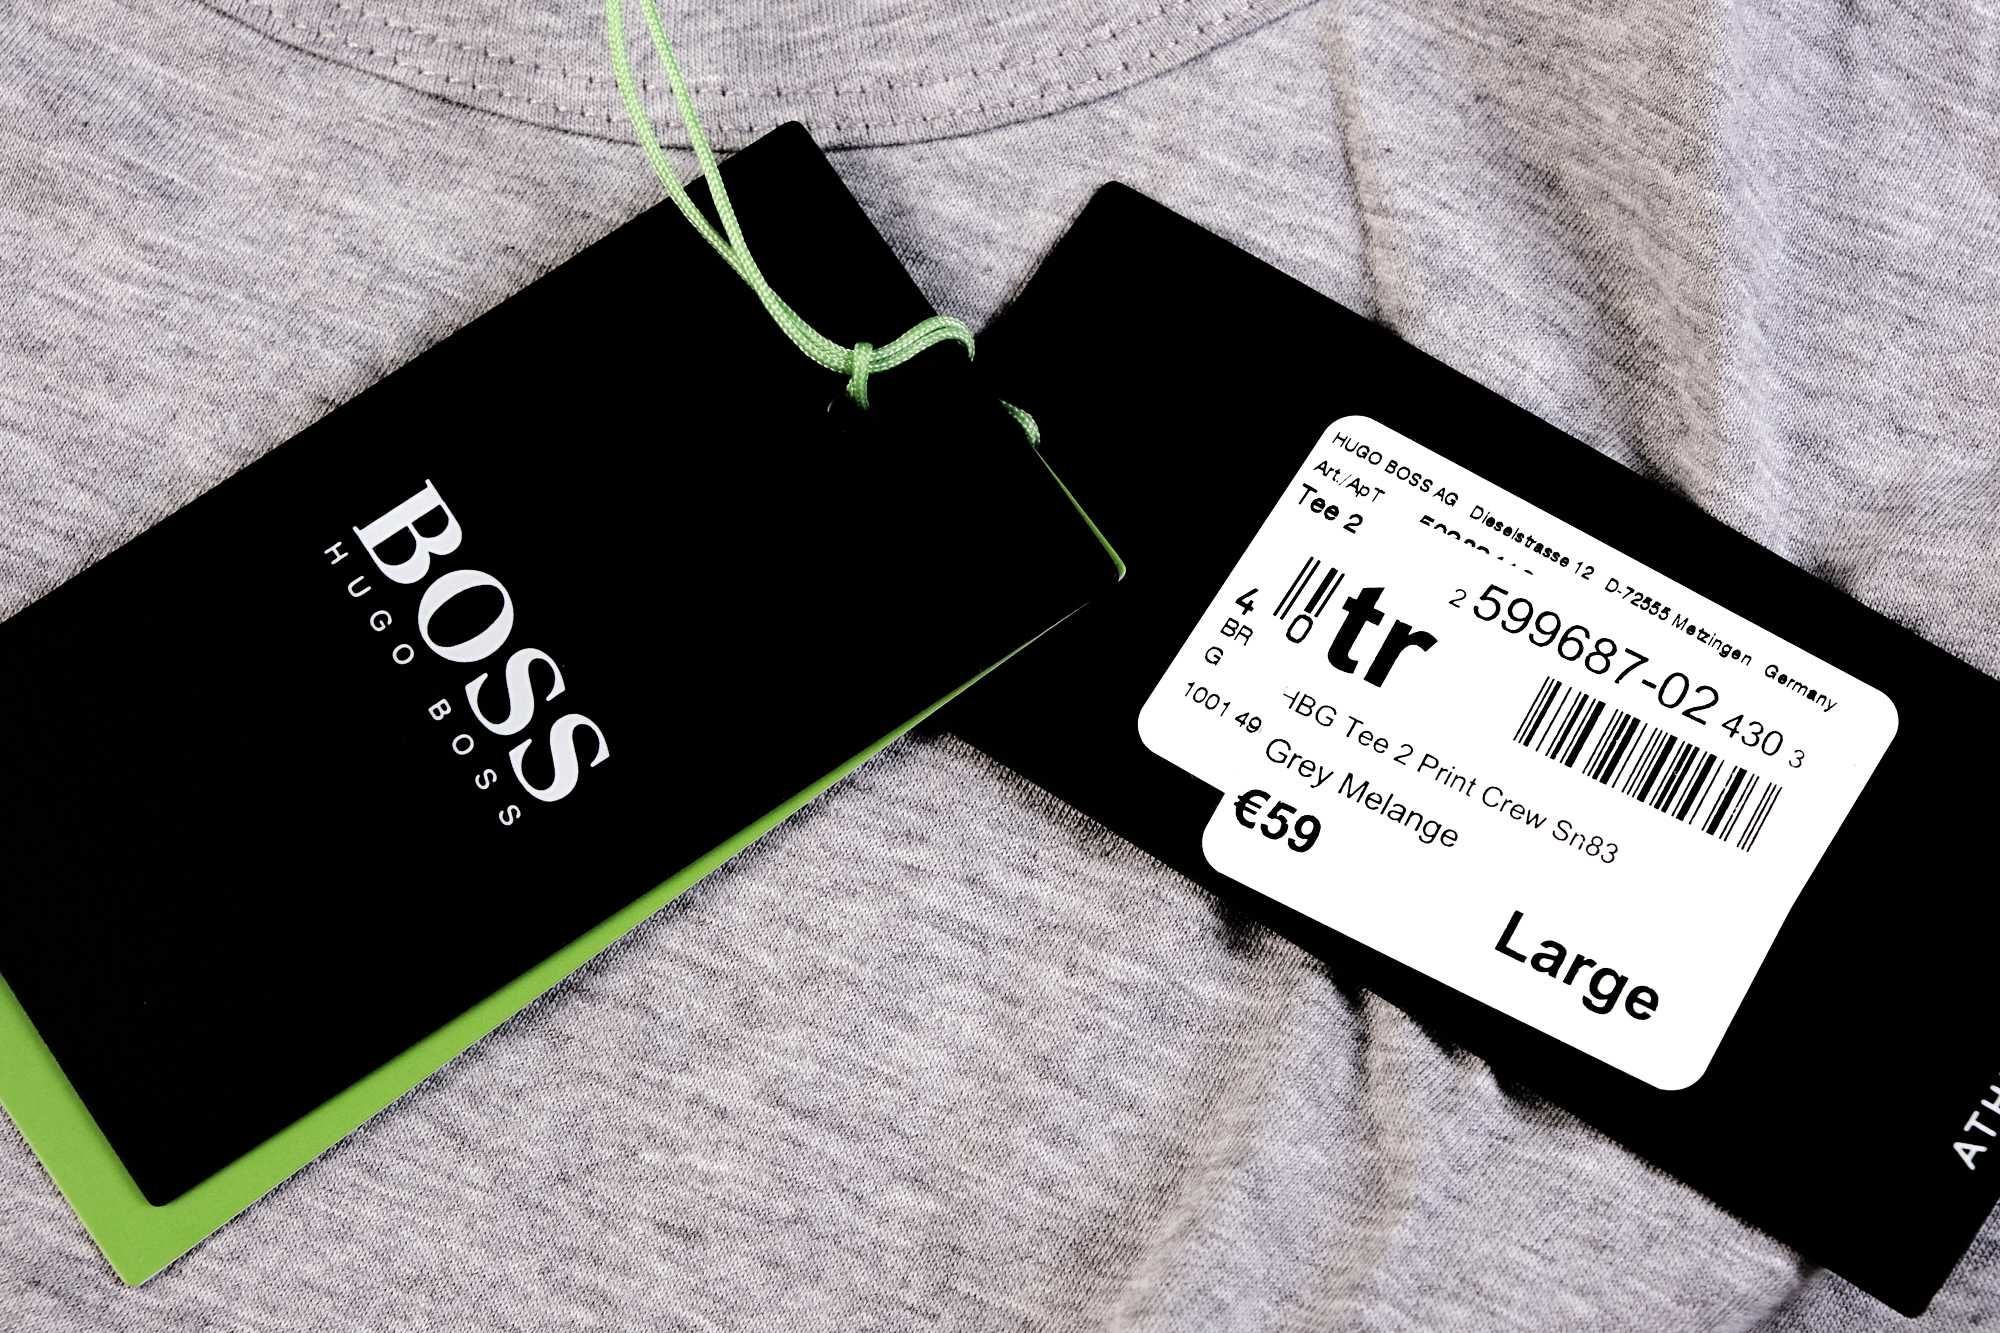 ПРОМО BOSS Green Tee 2- L размер- Оригинална мъжка сива тениска